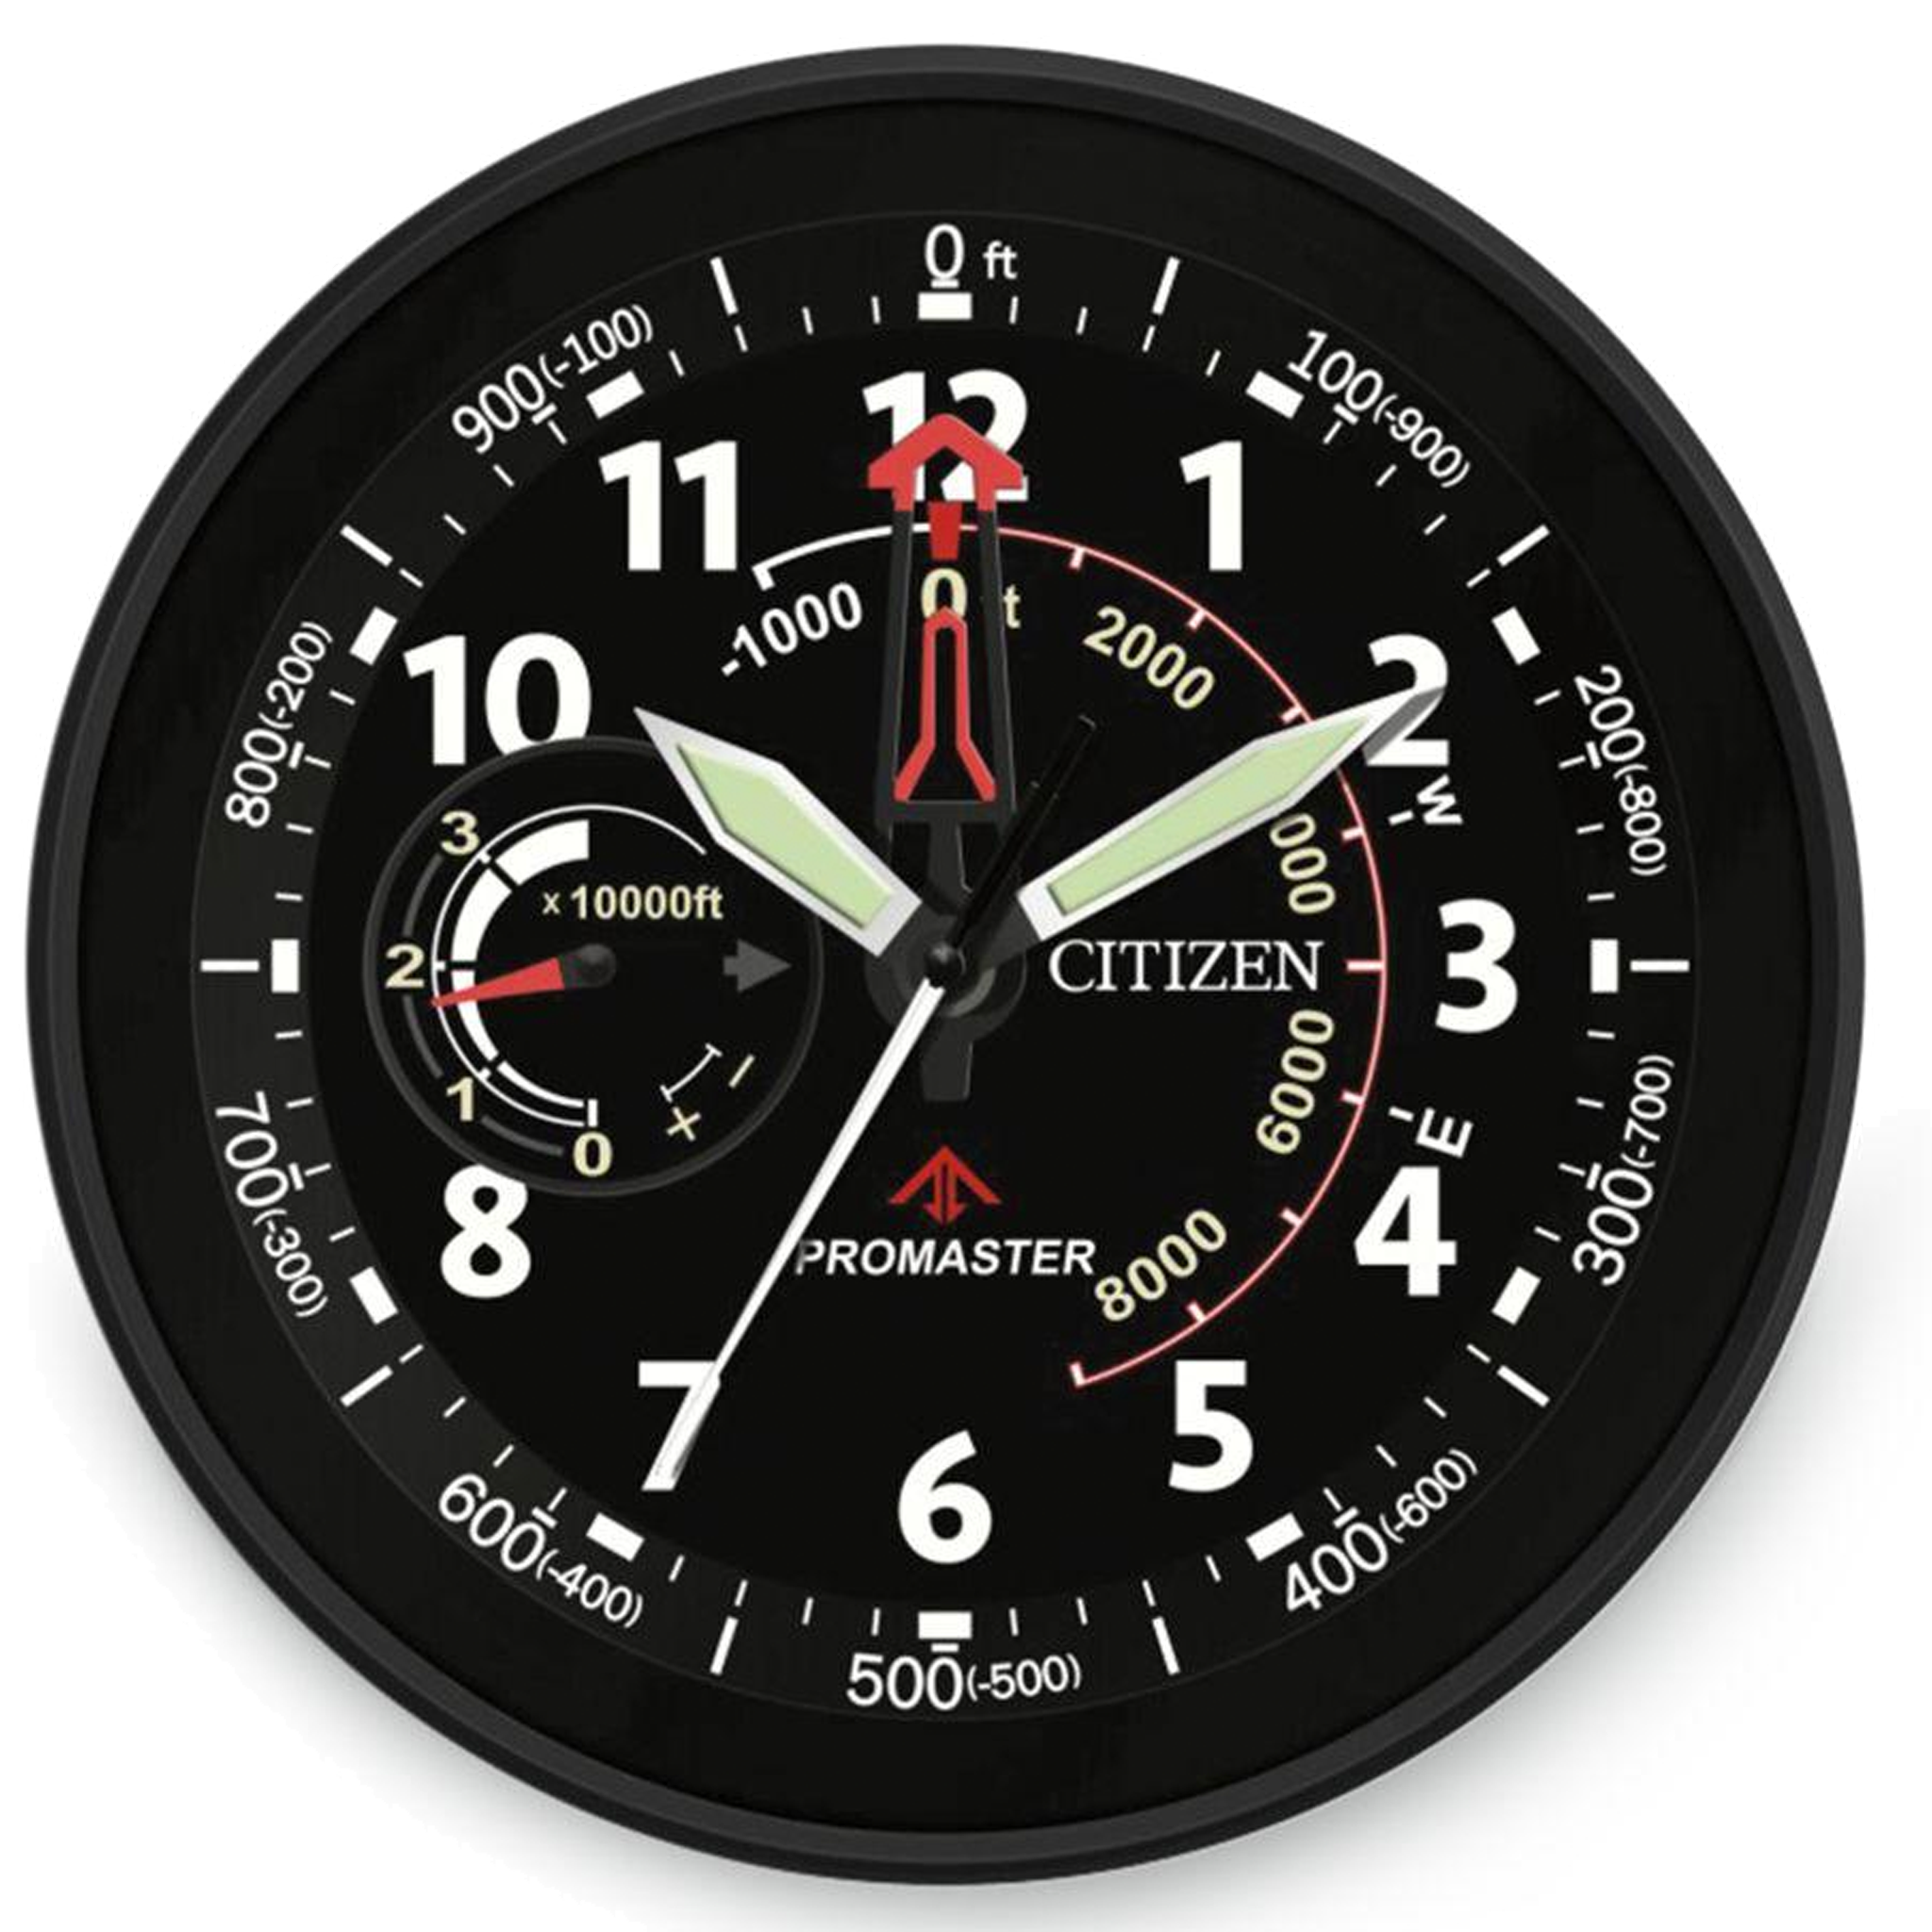 Citizen Wall Clock